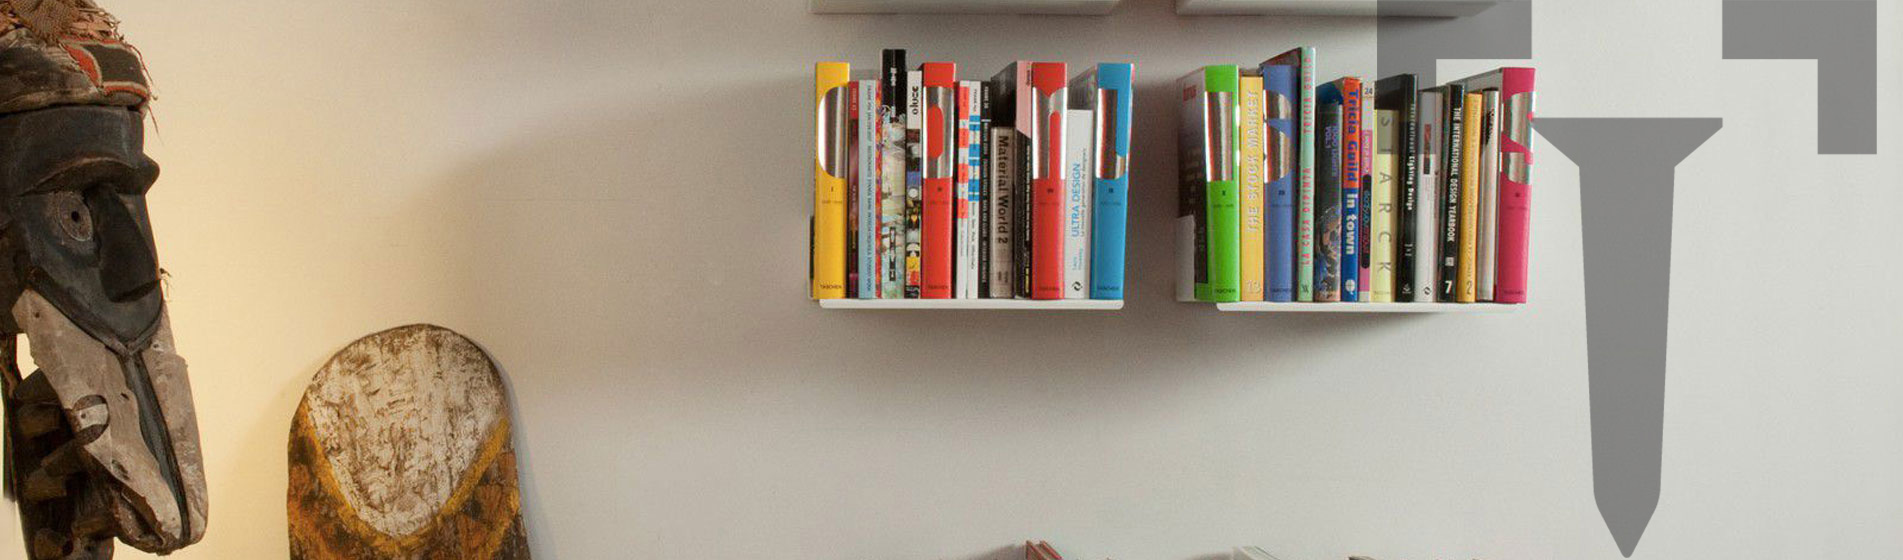 Petite étagère livre design a parete